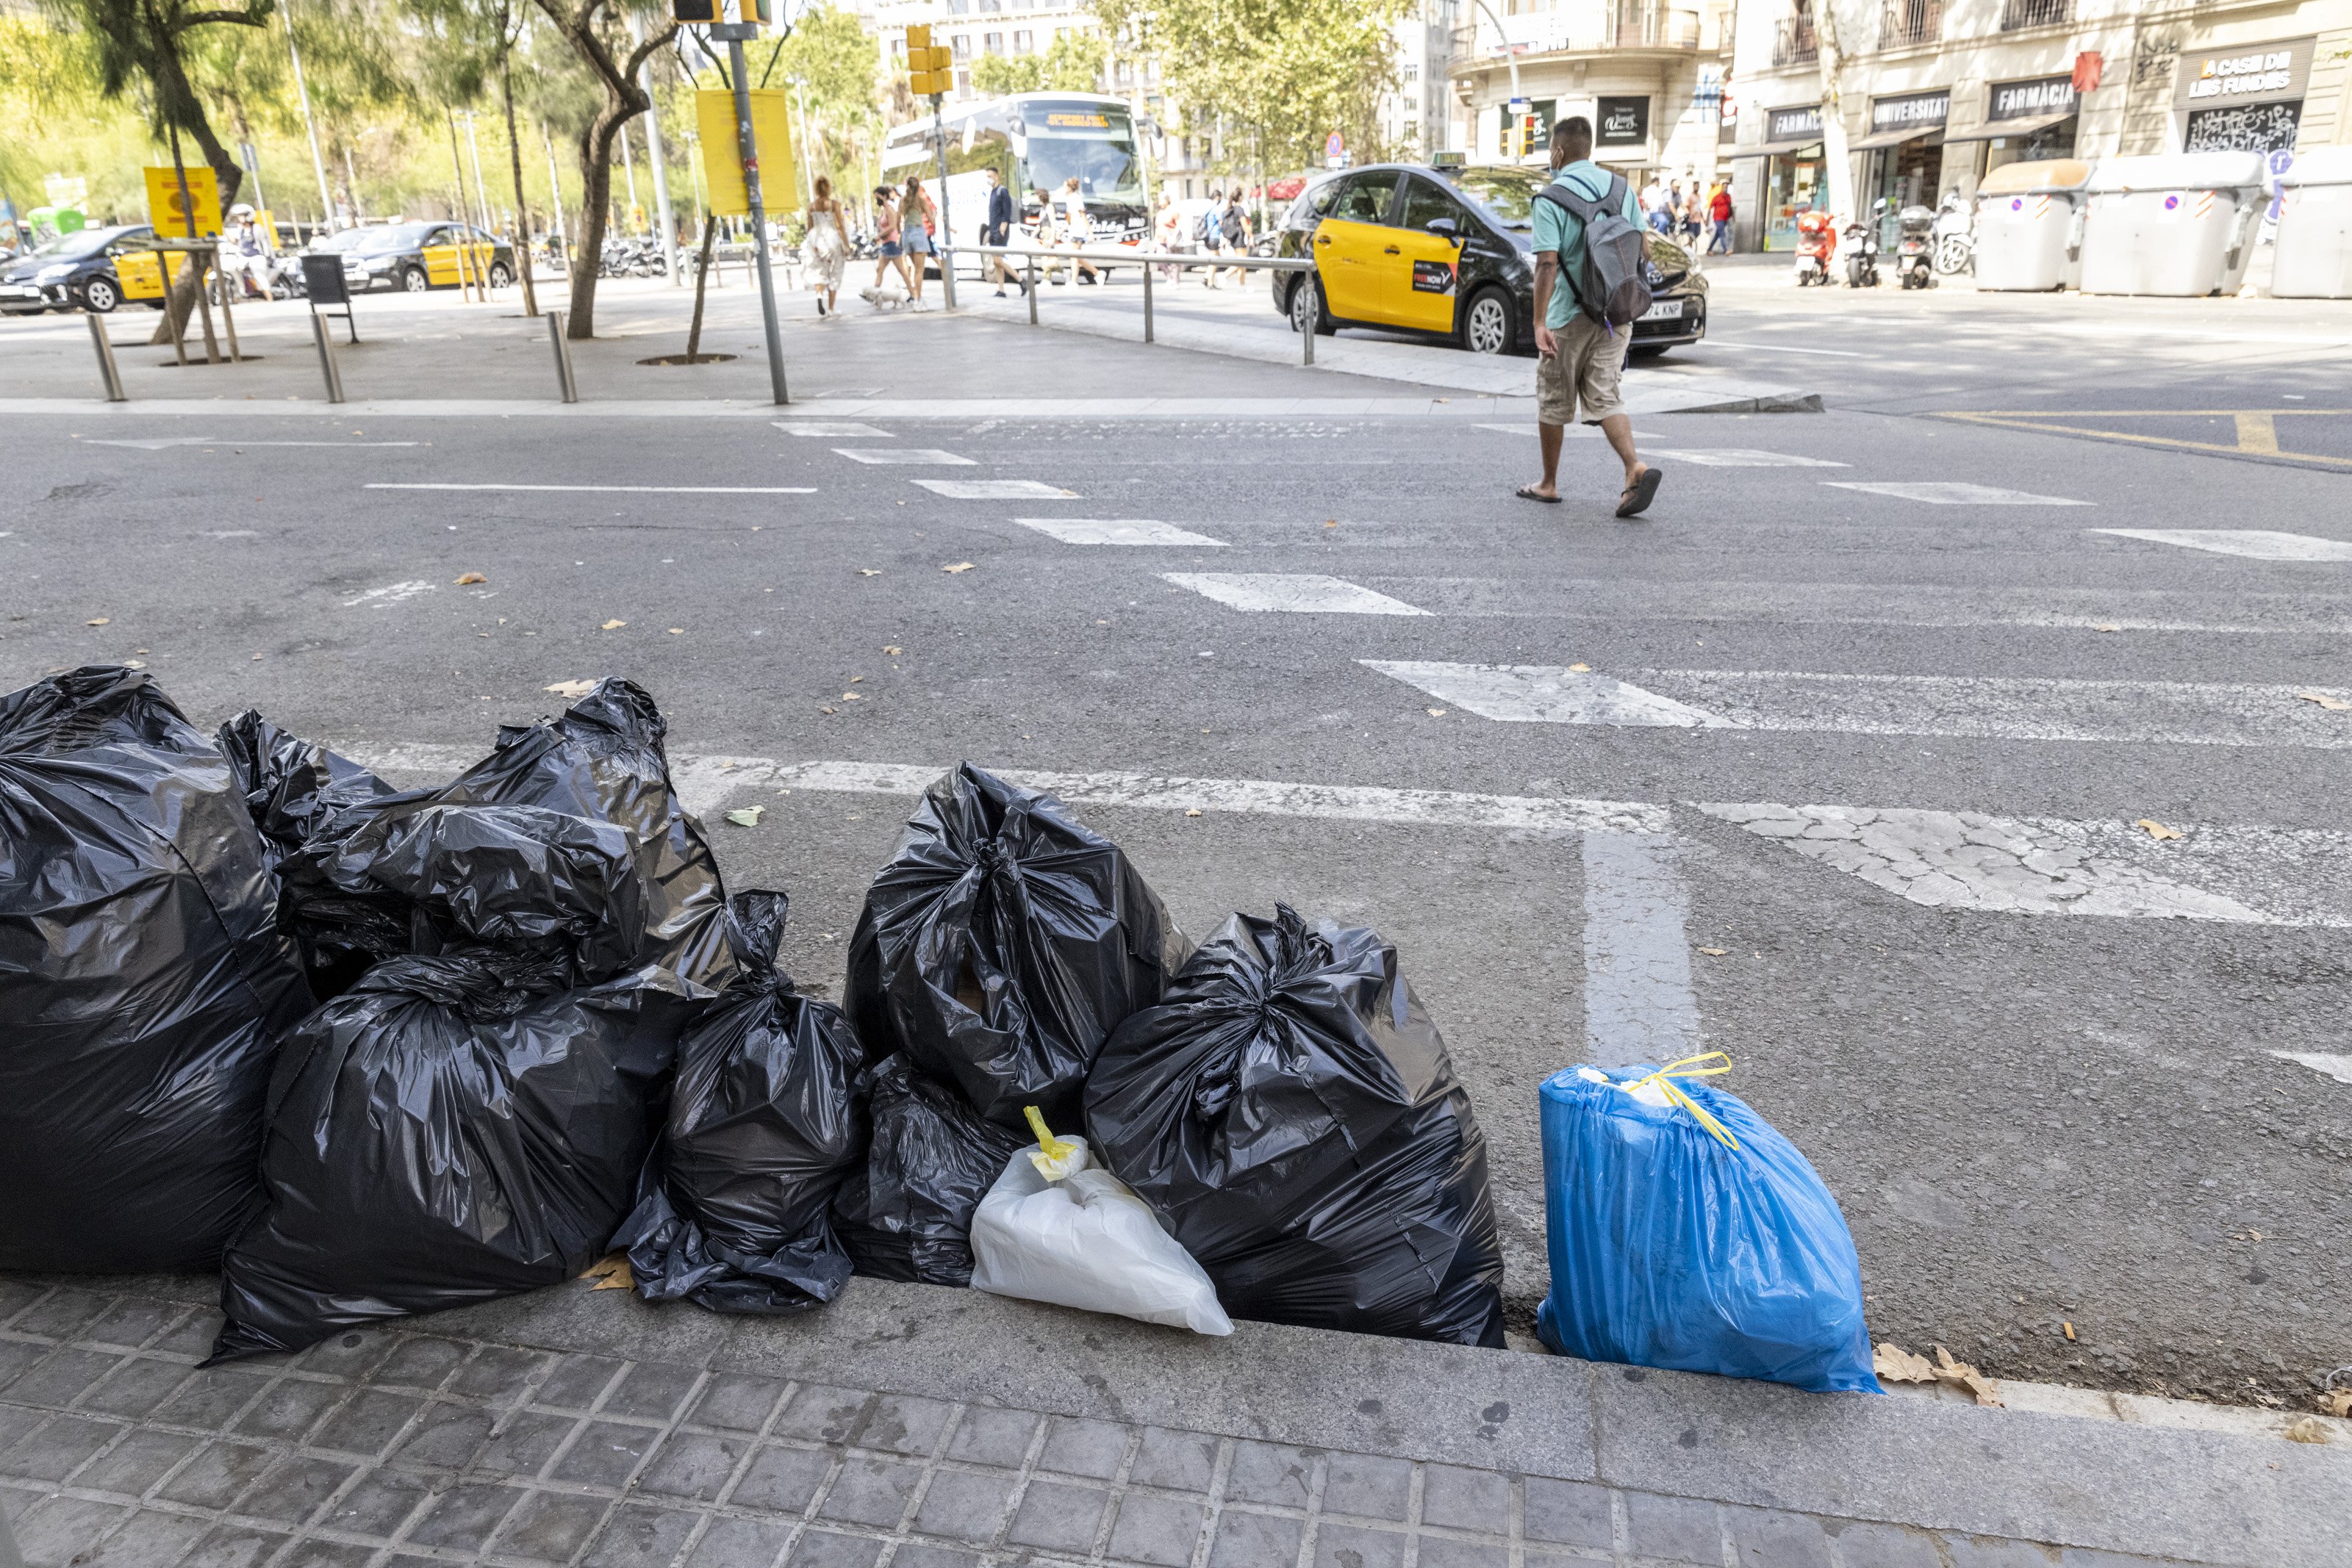 La oposición estalla contra Colau y su Barcelona "limpia"